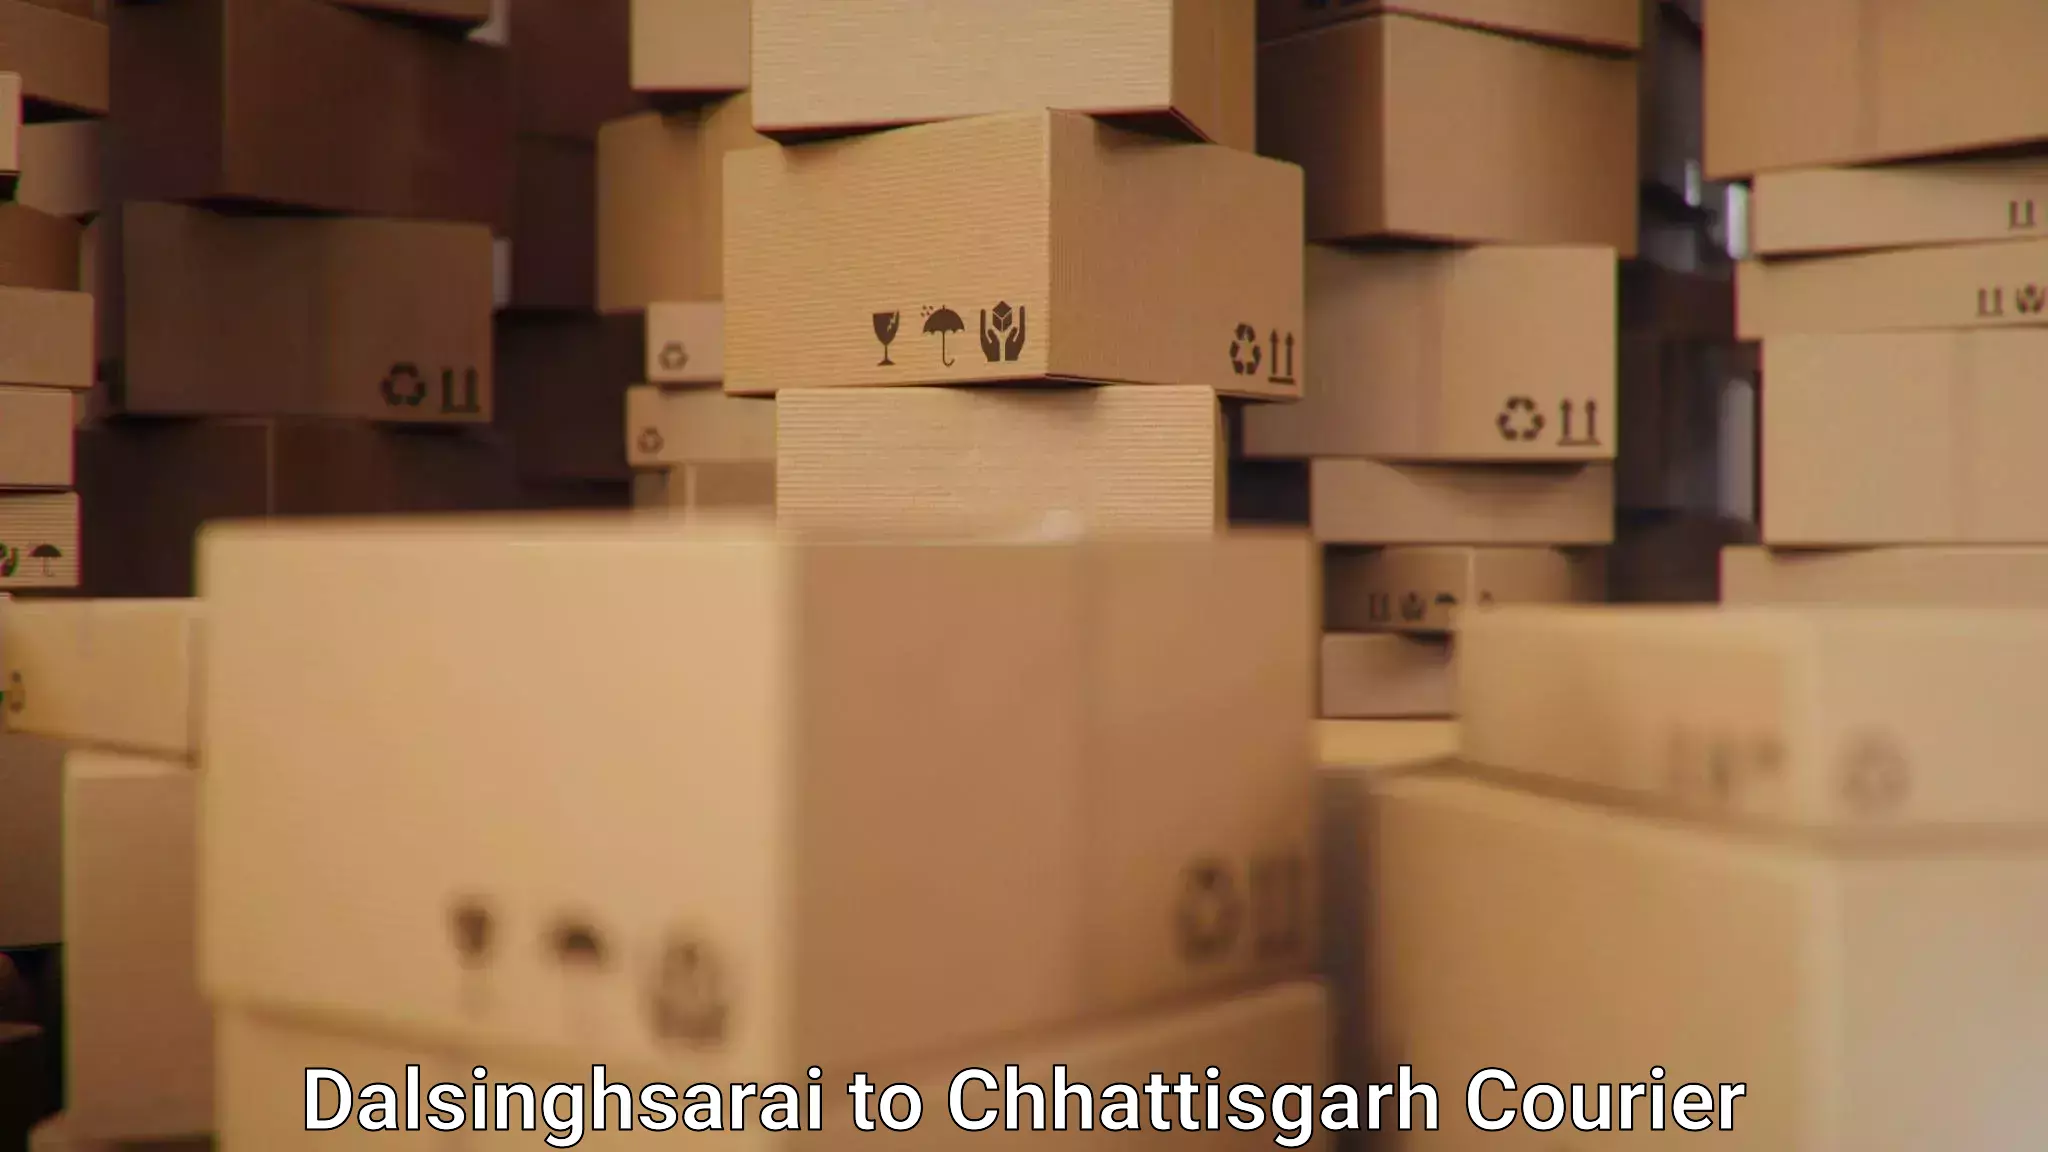 Supply chain delivery Dalsinghsarai to Bijapur Chhattisgarh